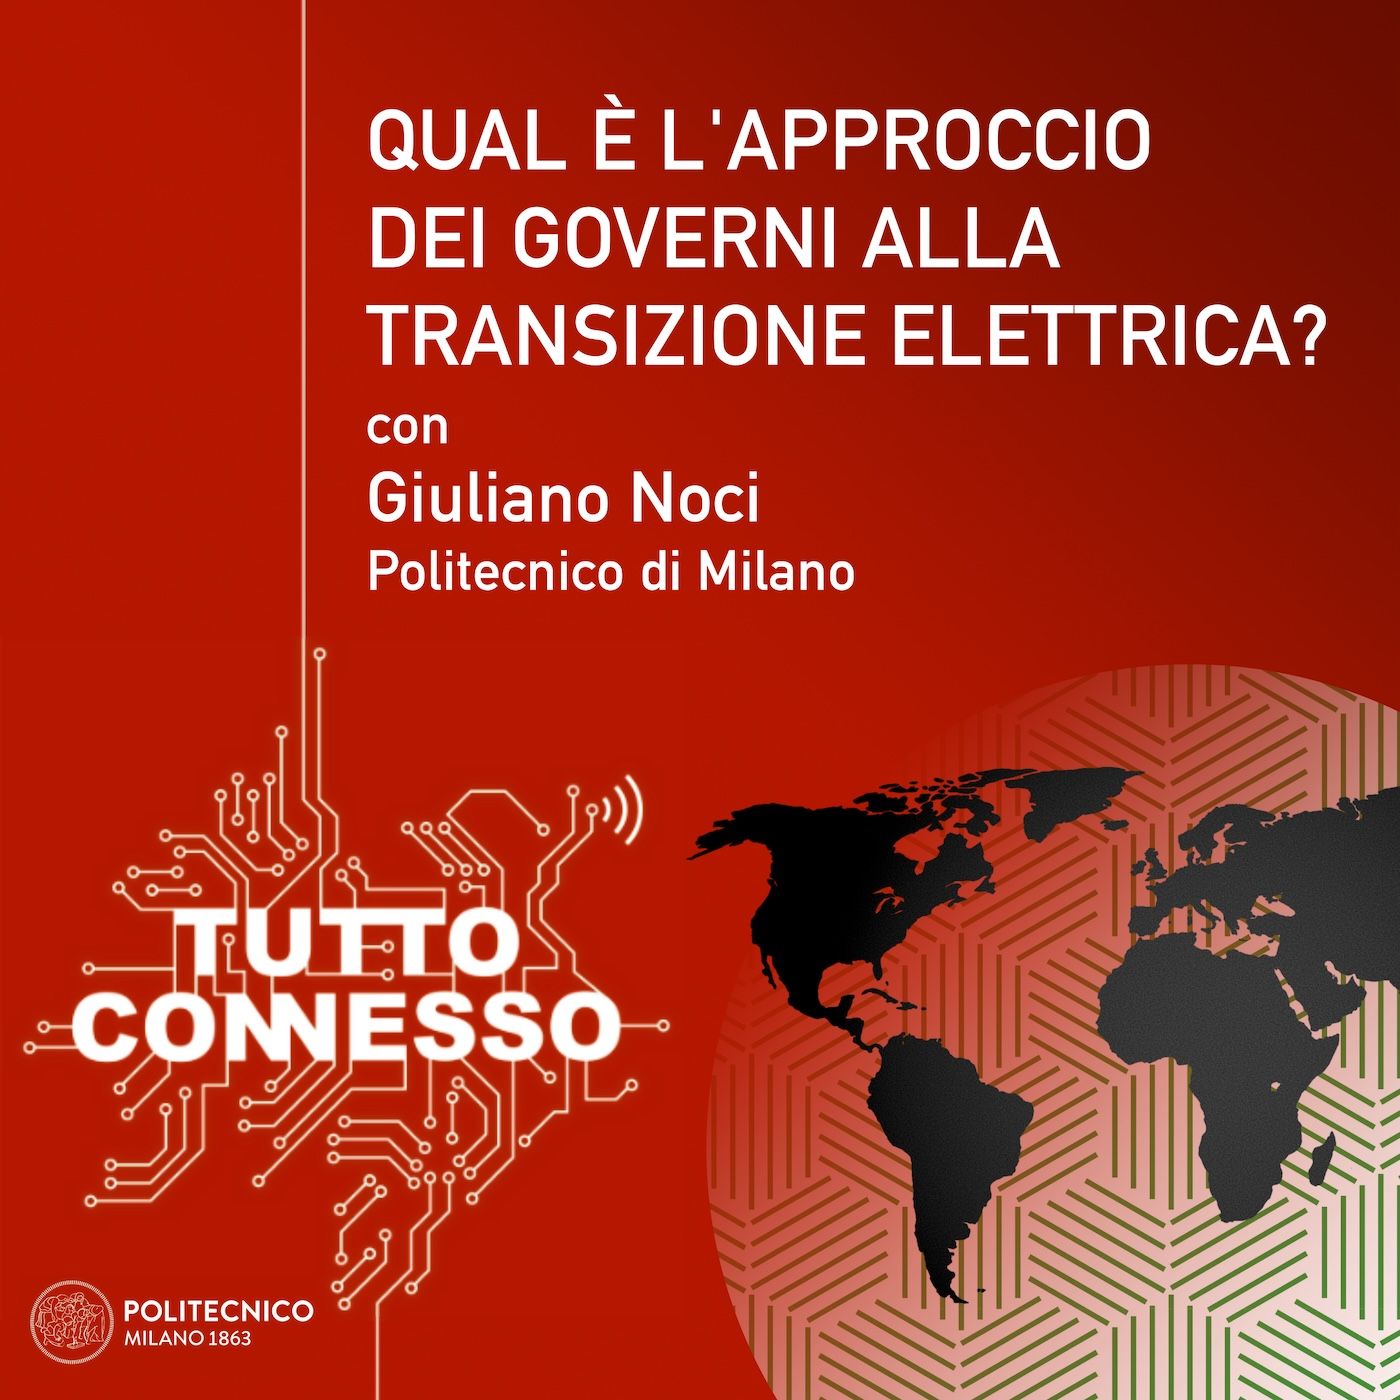 06: Qual è l'approccio dei governi alla transizione elettrica? Con Giuliano Noci